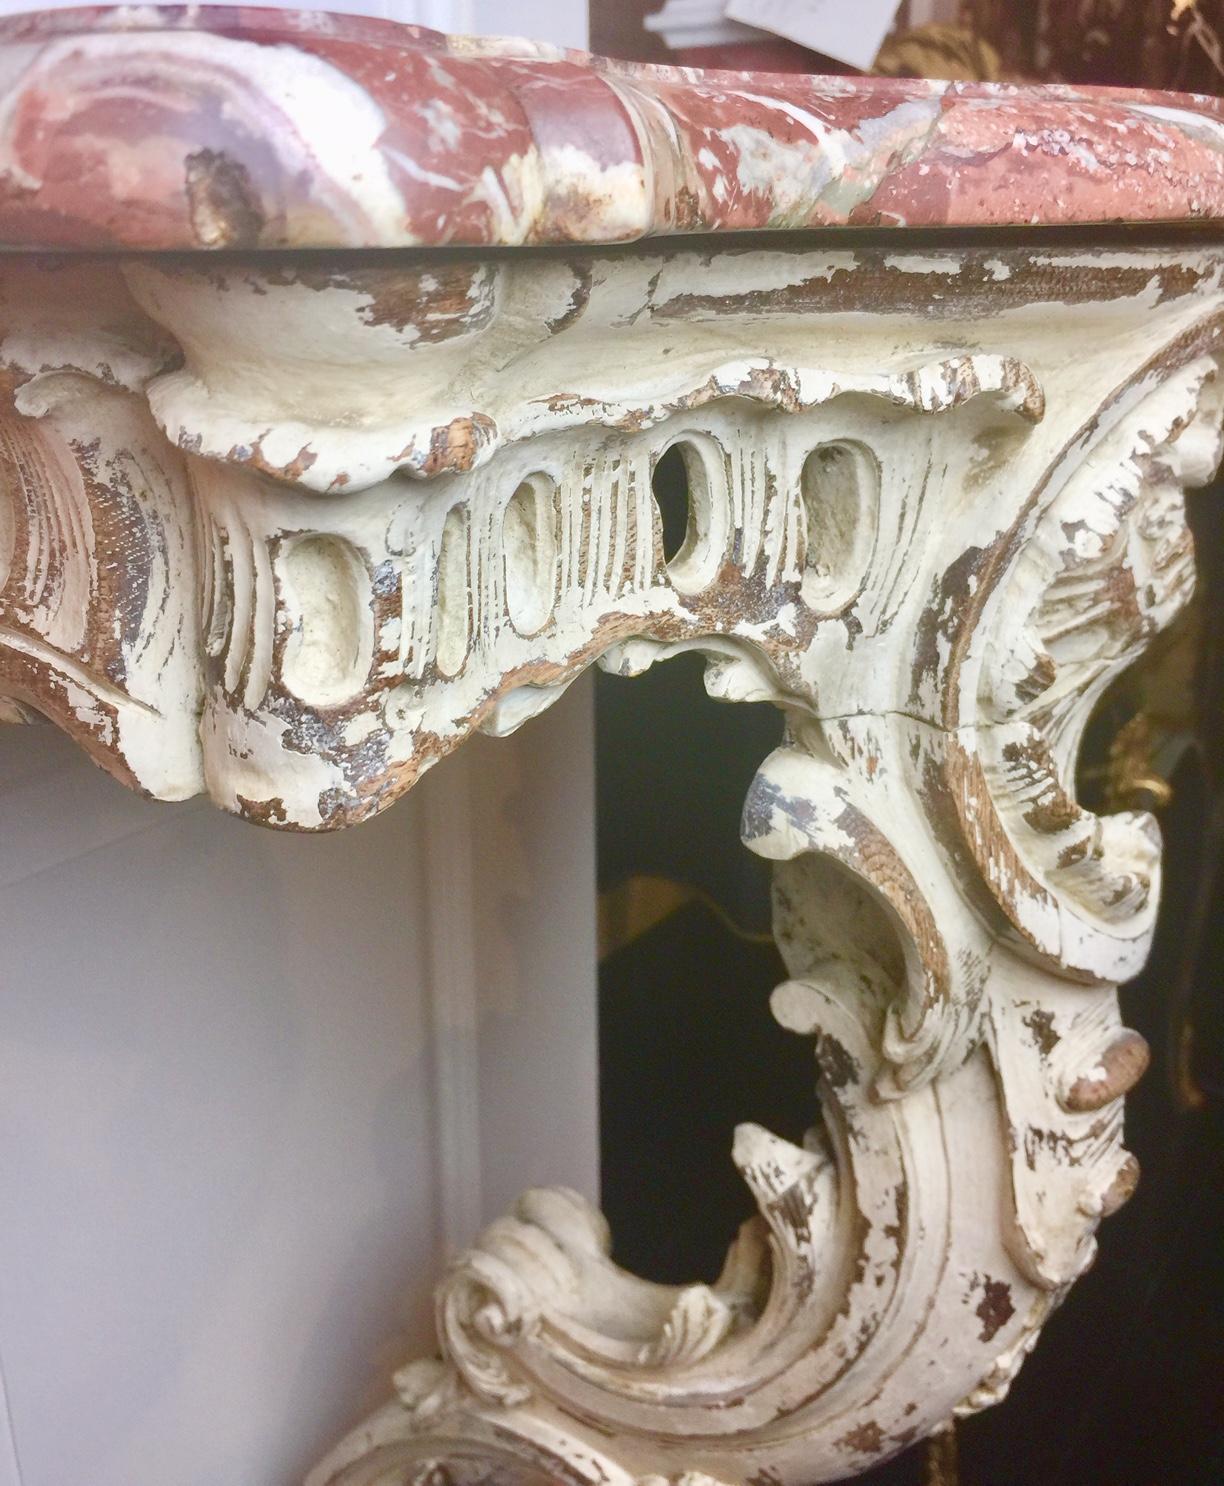 Französischer Konsolentisch mit Marmorplatte im Stil Louis XV der Provence, 19. Jahrhundert. Der reich skulptierte, handgeschnitzte Holzsockel wird von einem anmutigen, einzelnen Cabriole-Bein getragen. Diese Wandkonsole ist ein schönes Beispiel für